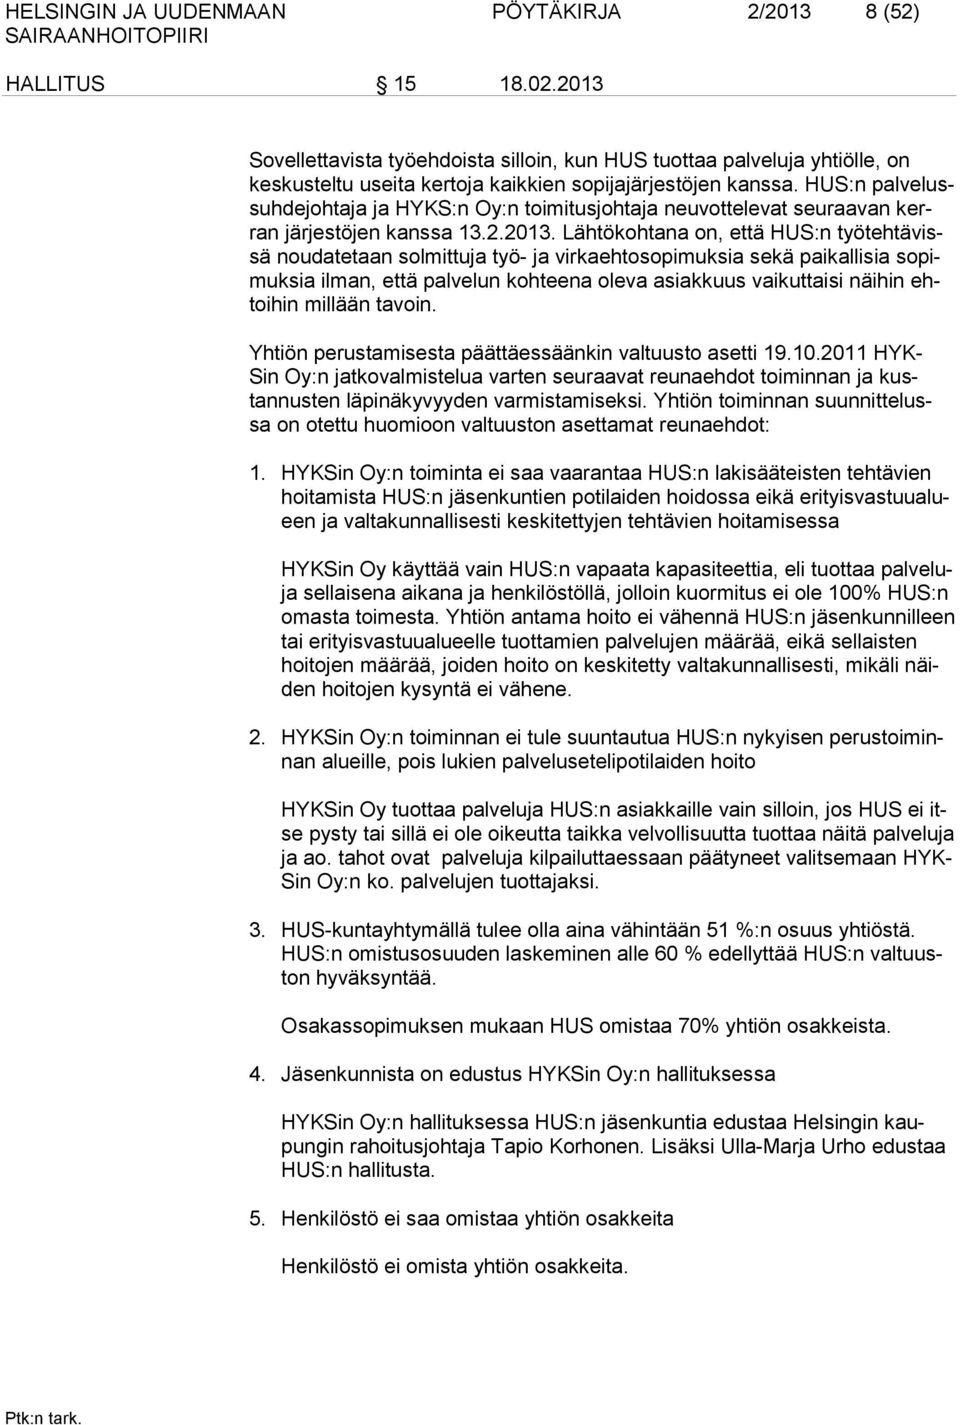 HUS:n palvelussuhdejohtaja ja HYKS:n Oy:n toimitusjohtaja neuvottelevat seuraavan kerran järjestöjen kanssa 13.2.2013.